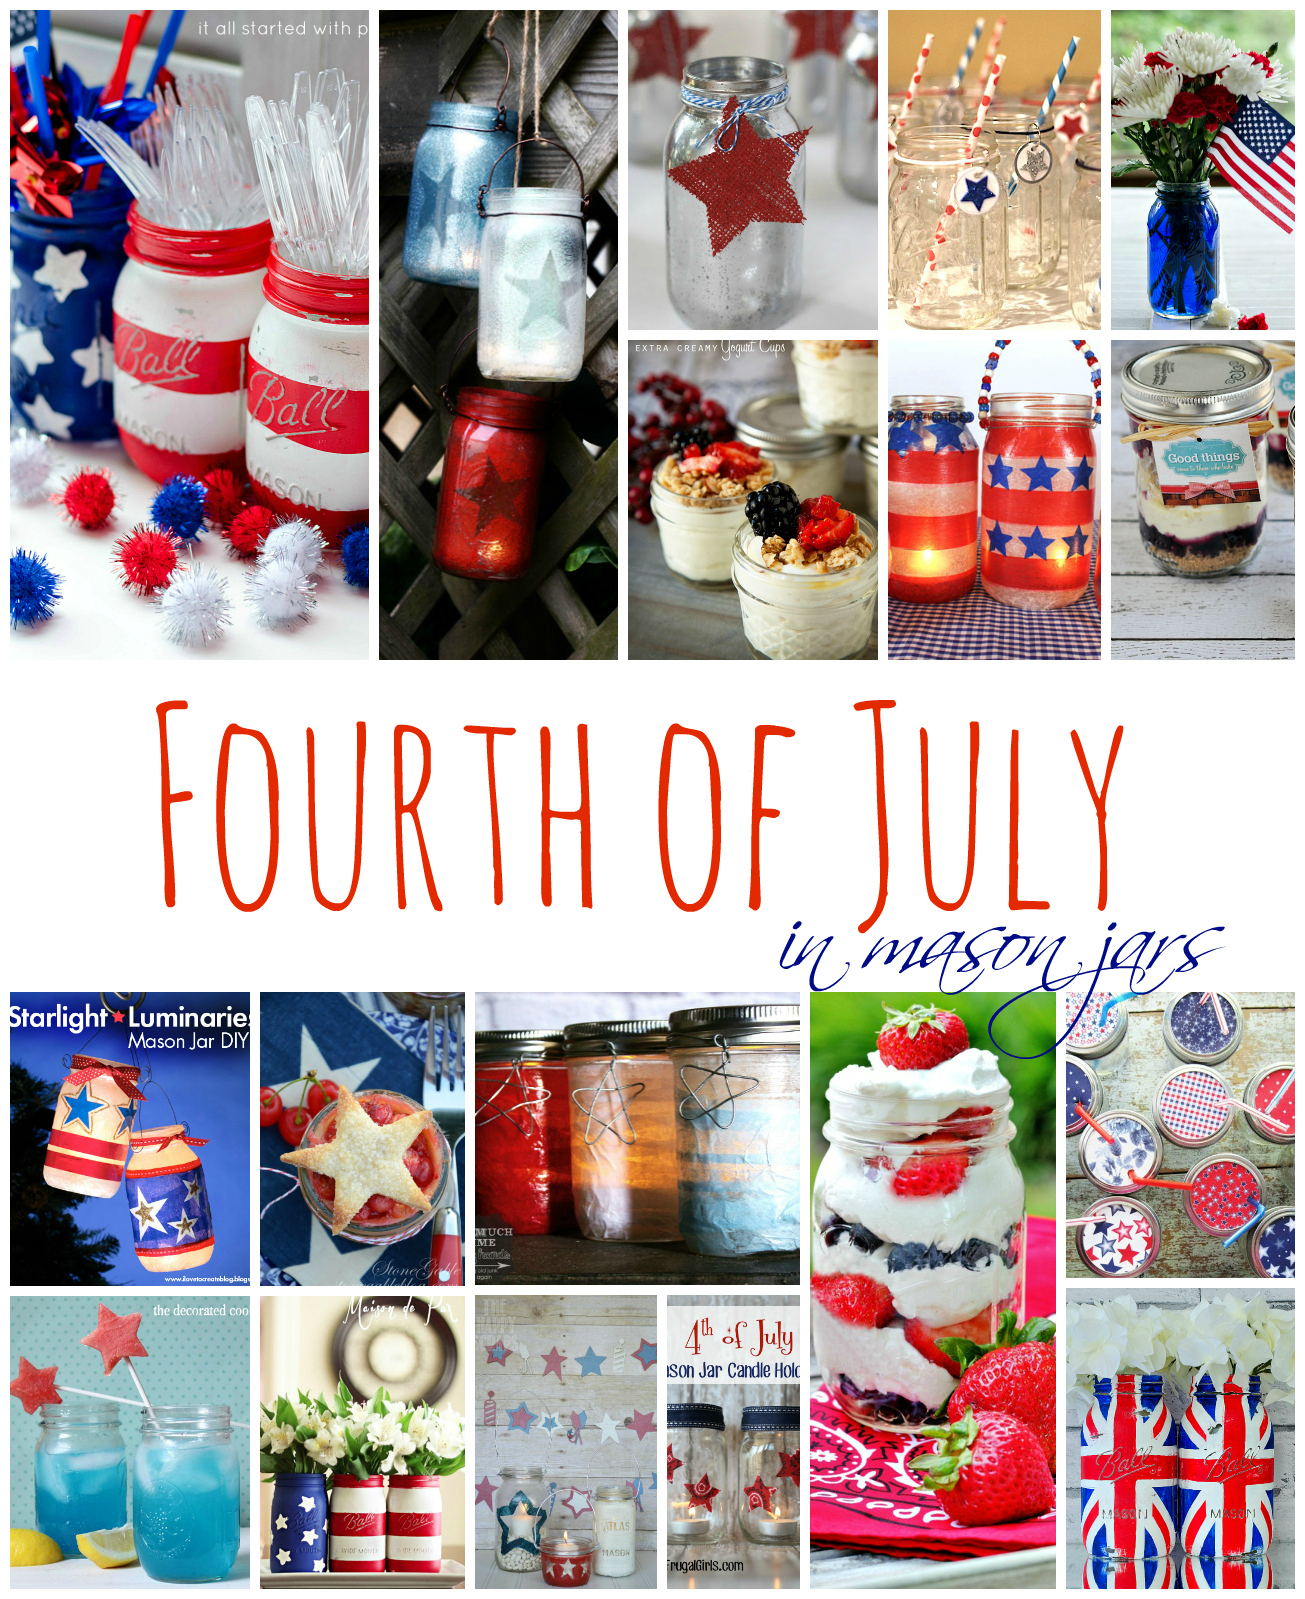 fourth-of-july-mason-jar-crafts-foods-ideas 2